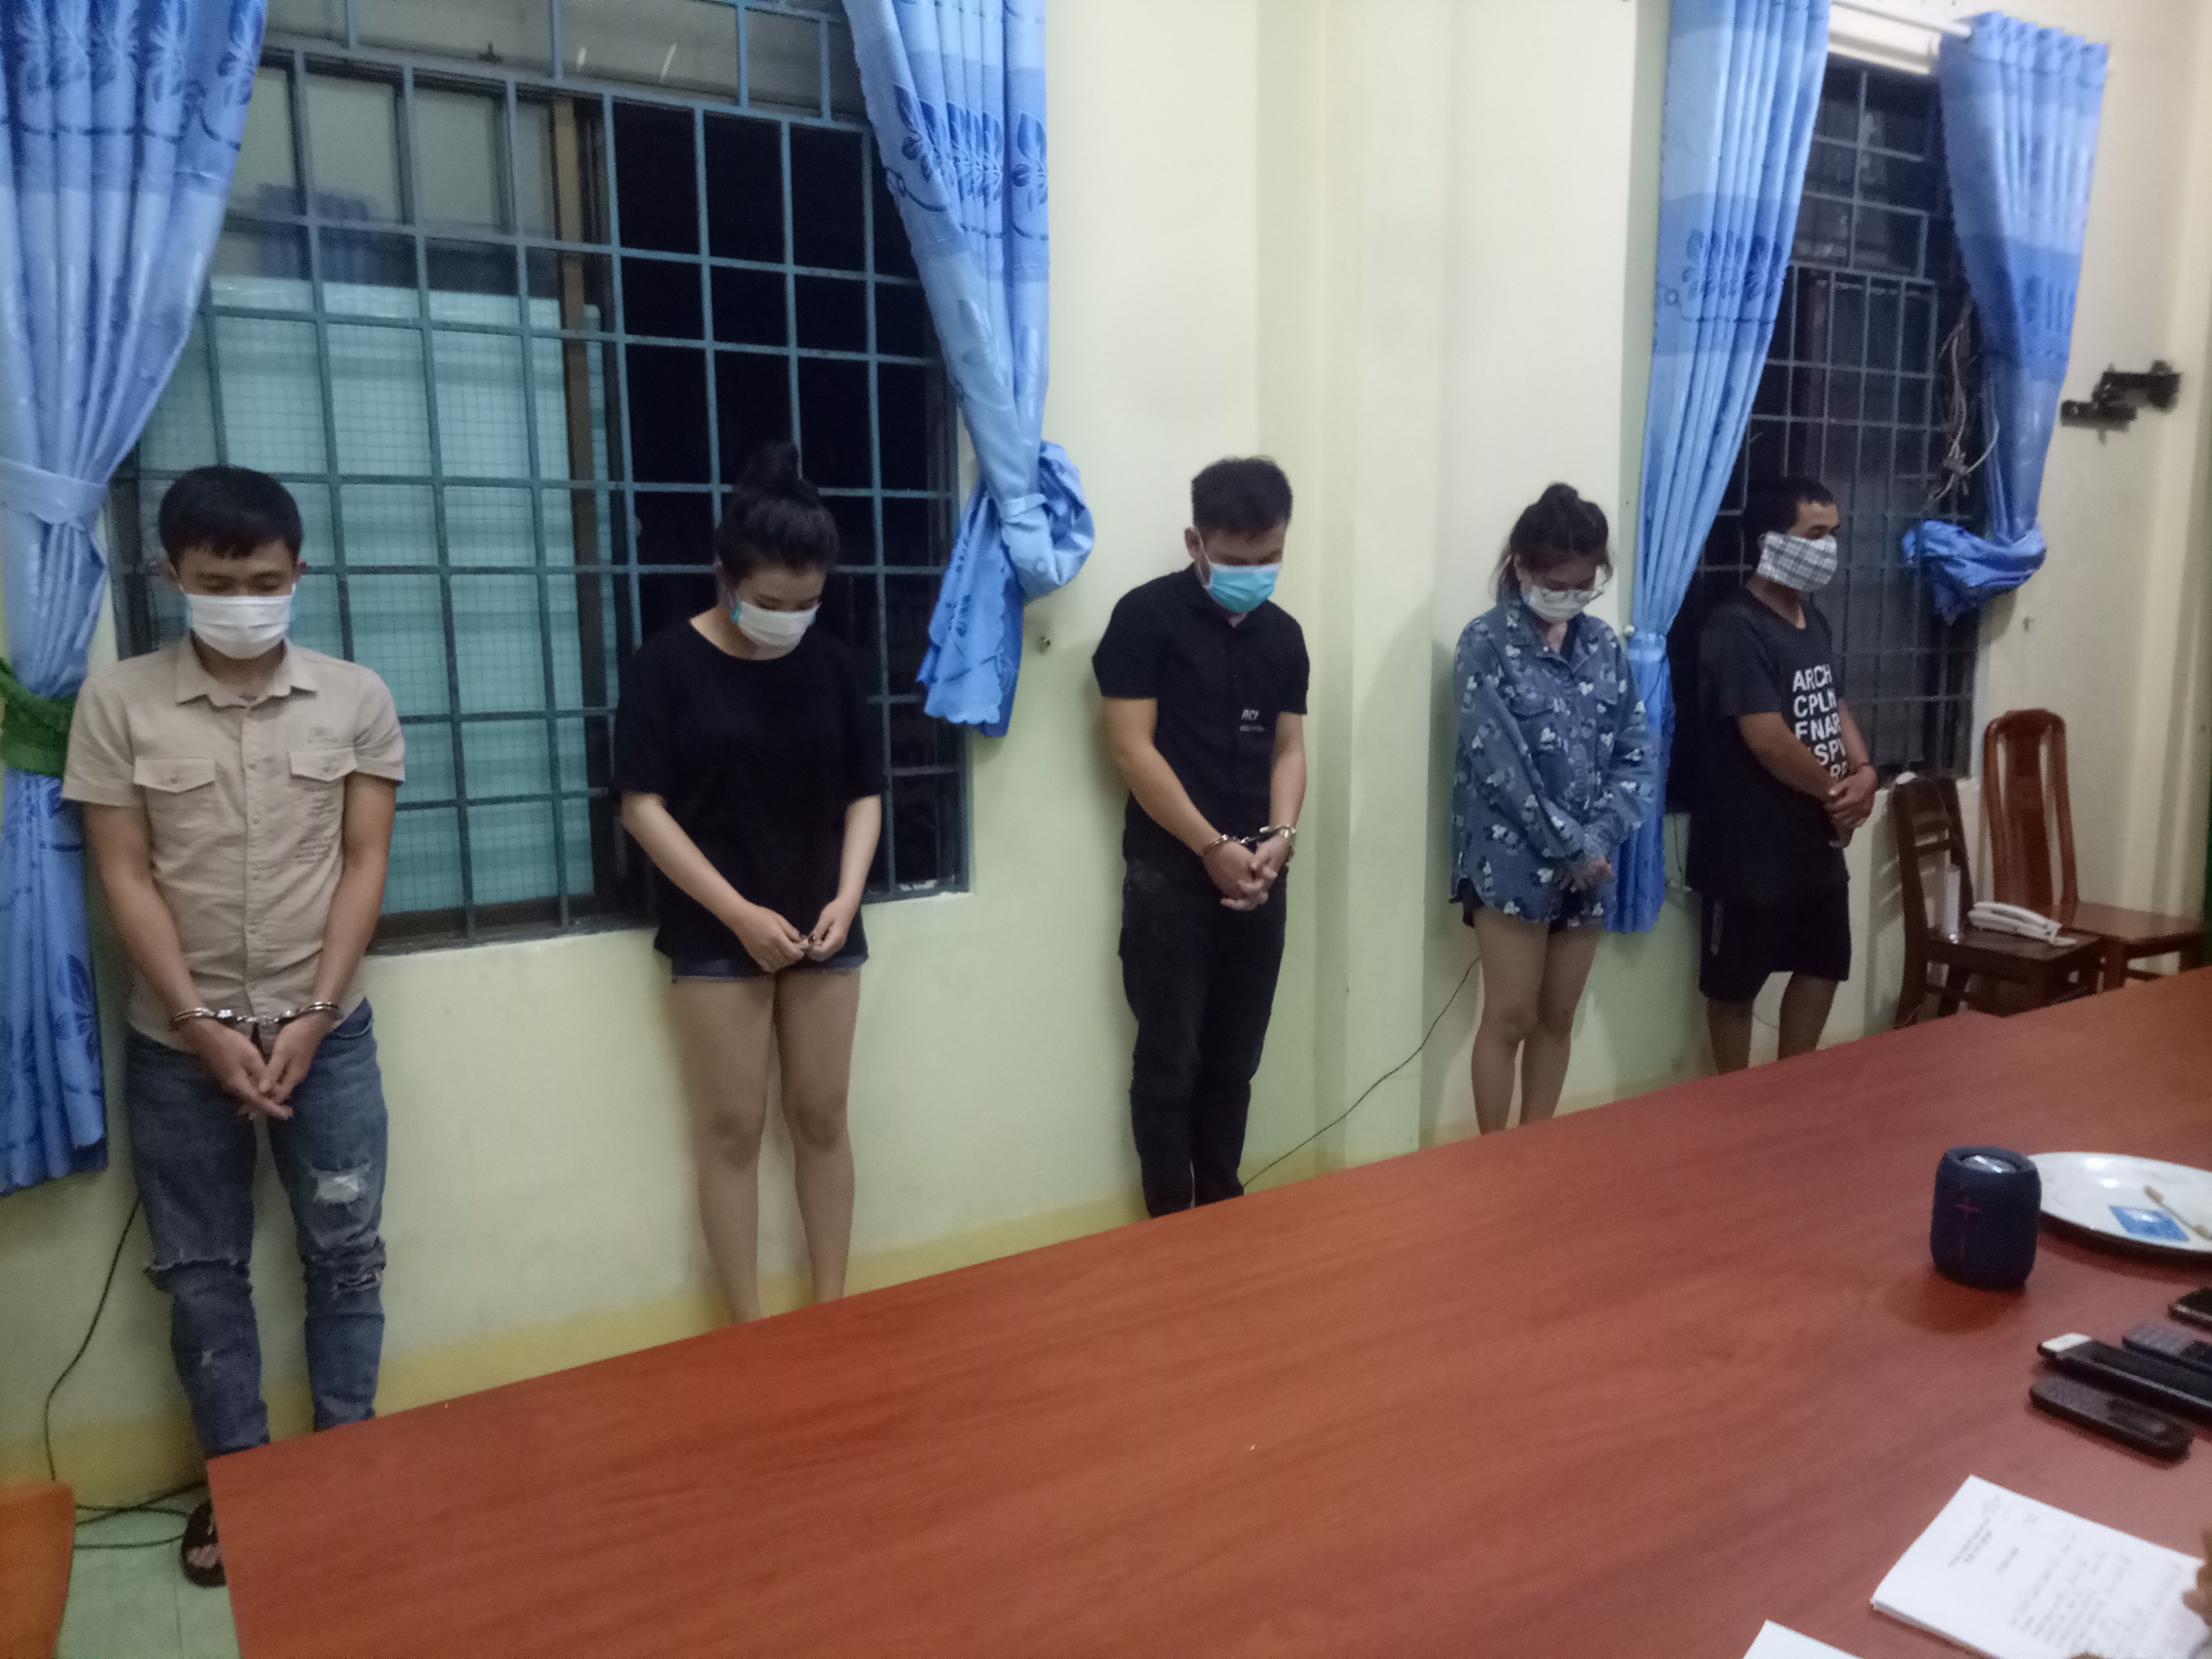 Thành phố Quảng Ngãi: Phát hiện nhóm đối tượng tụ tập sử dụng trái phép chất ma túy trong phòng trọ